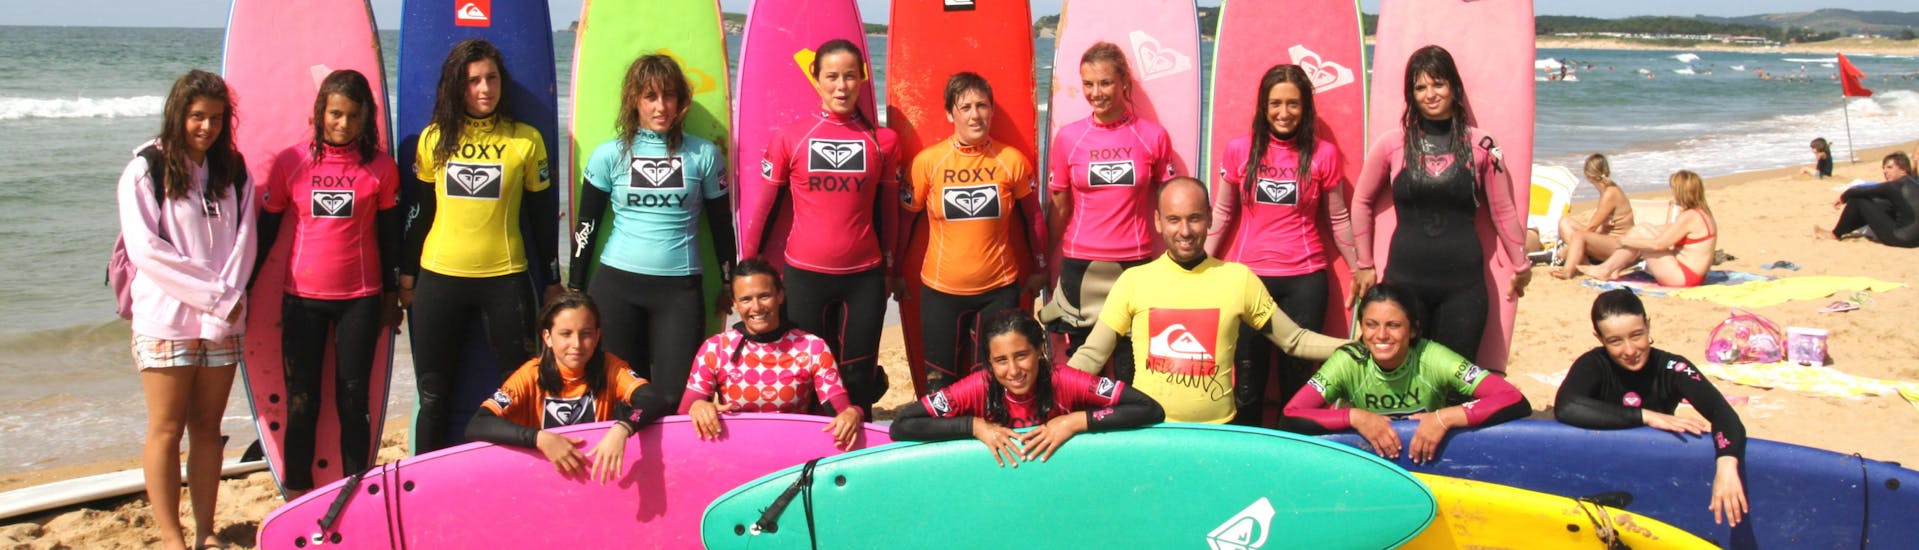 Participante de la lección de surf haciéndose una foto de grupo en la Playa de Somo durante una actividad proporcionada por la Escuela Cántabra de Surf Quiksilver Roxy